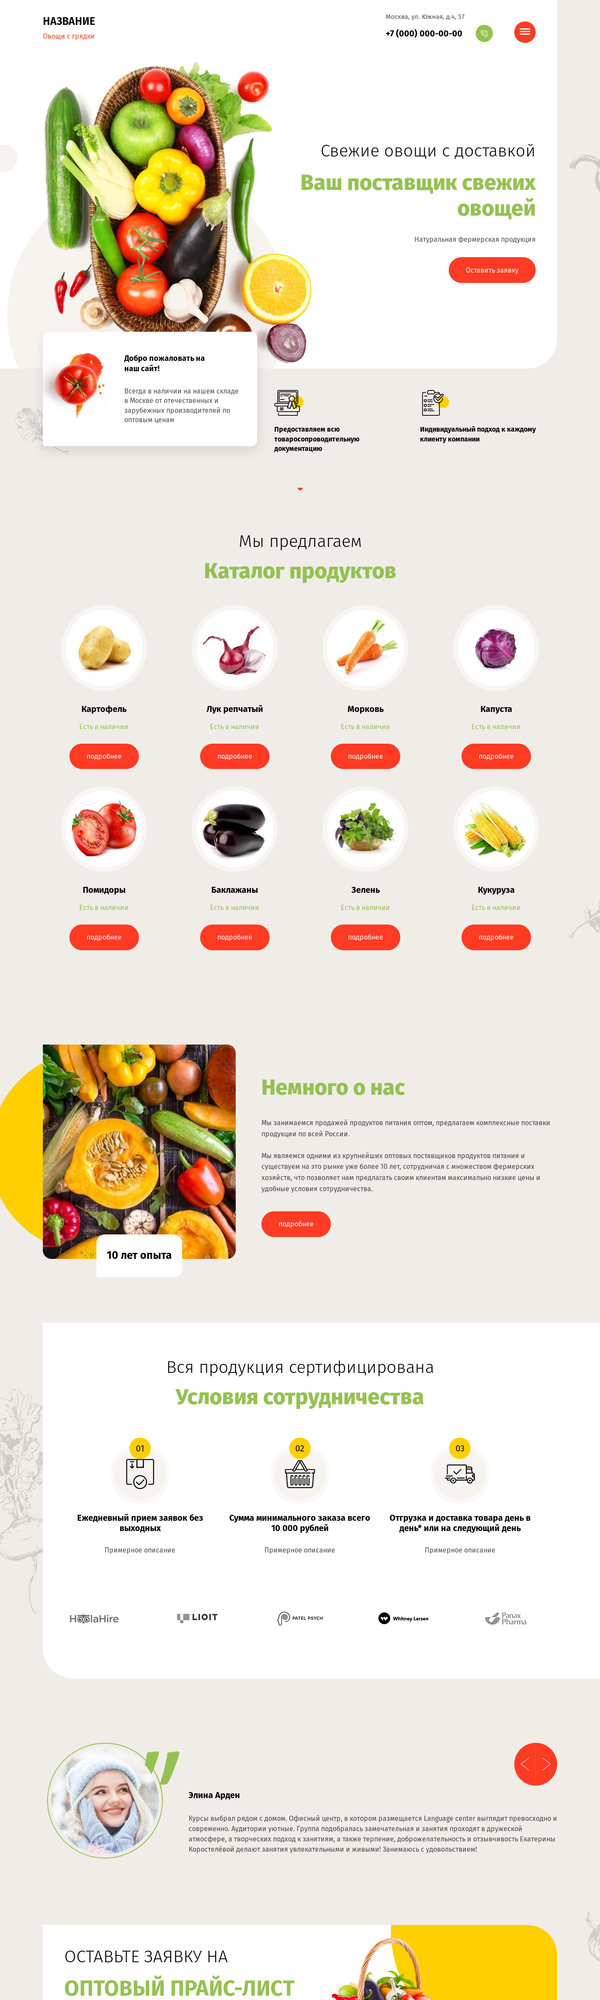 Готовый Сайт-Бизнес № 2581837 - Поставка свежих овощей (Десктопная версия)